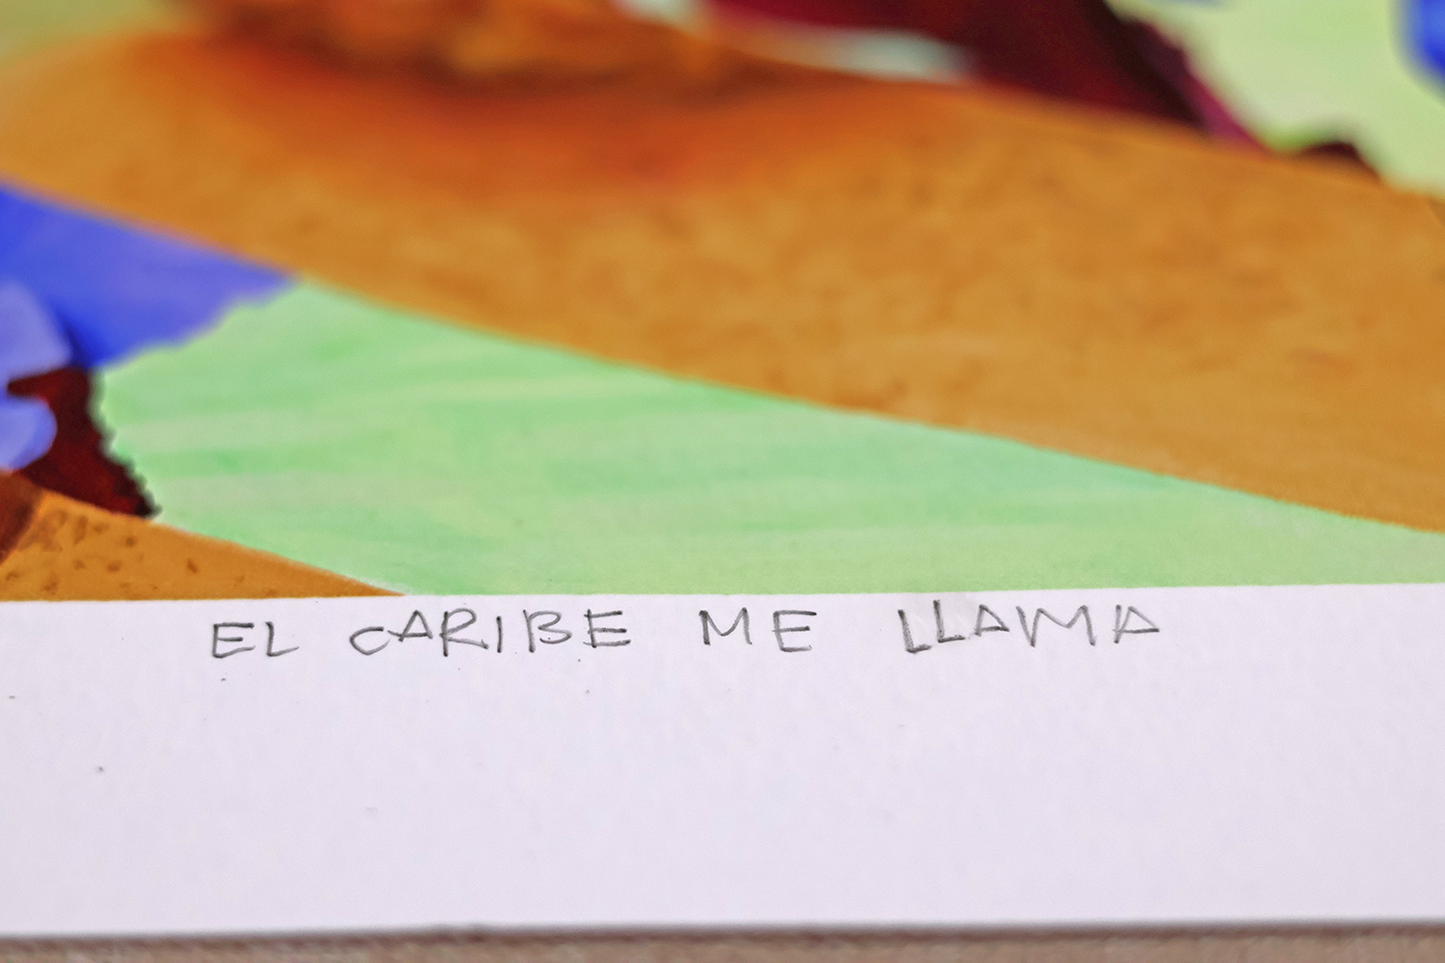 "EL CARIBE ME LLAMA"